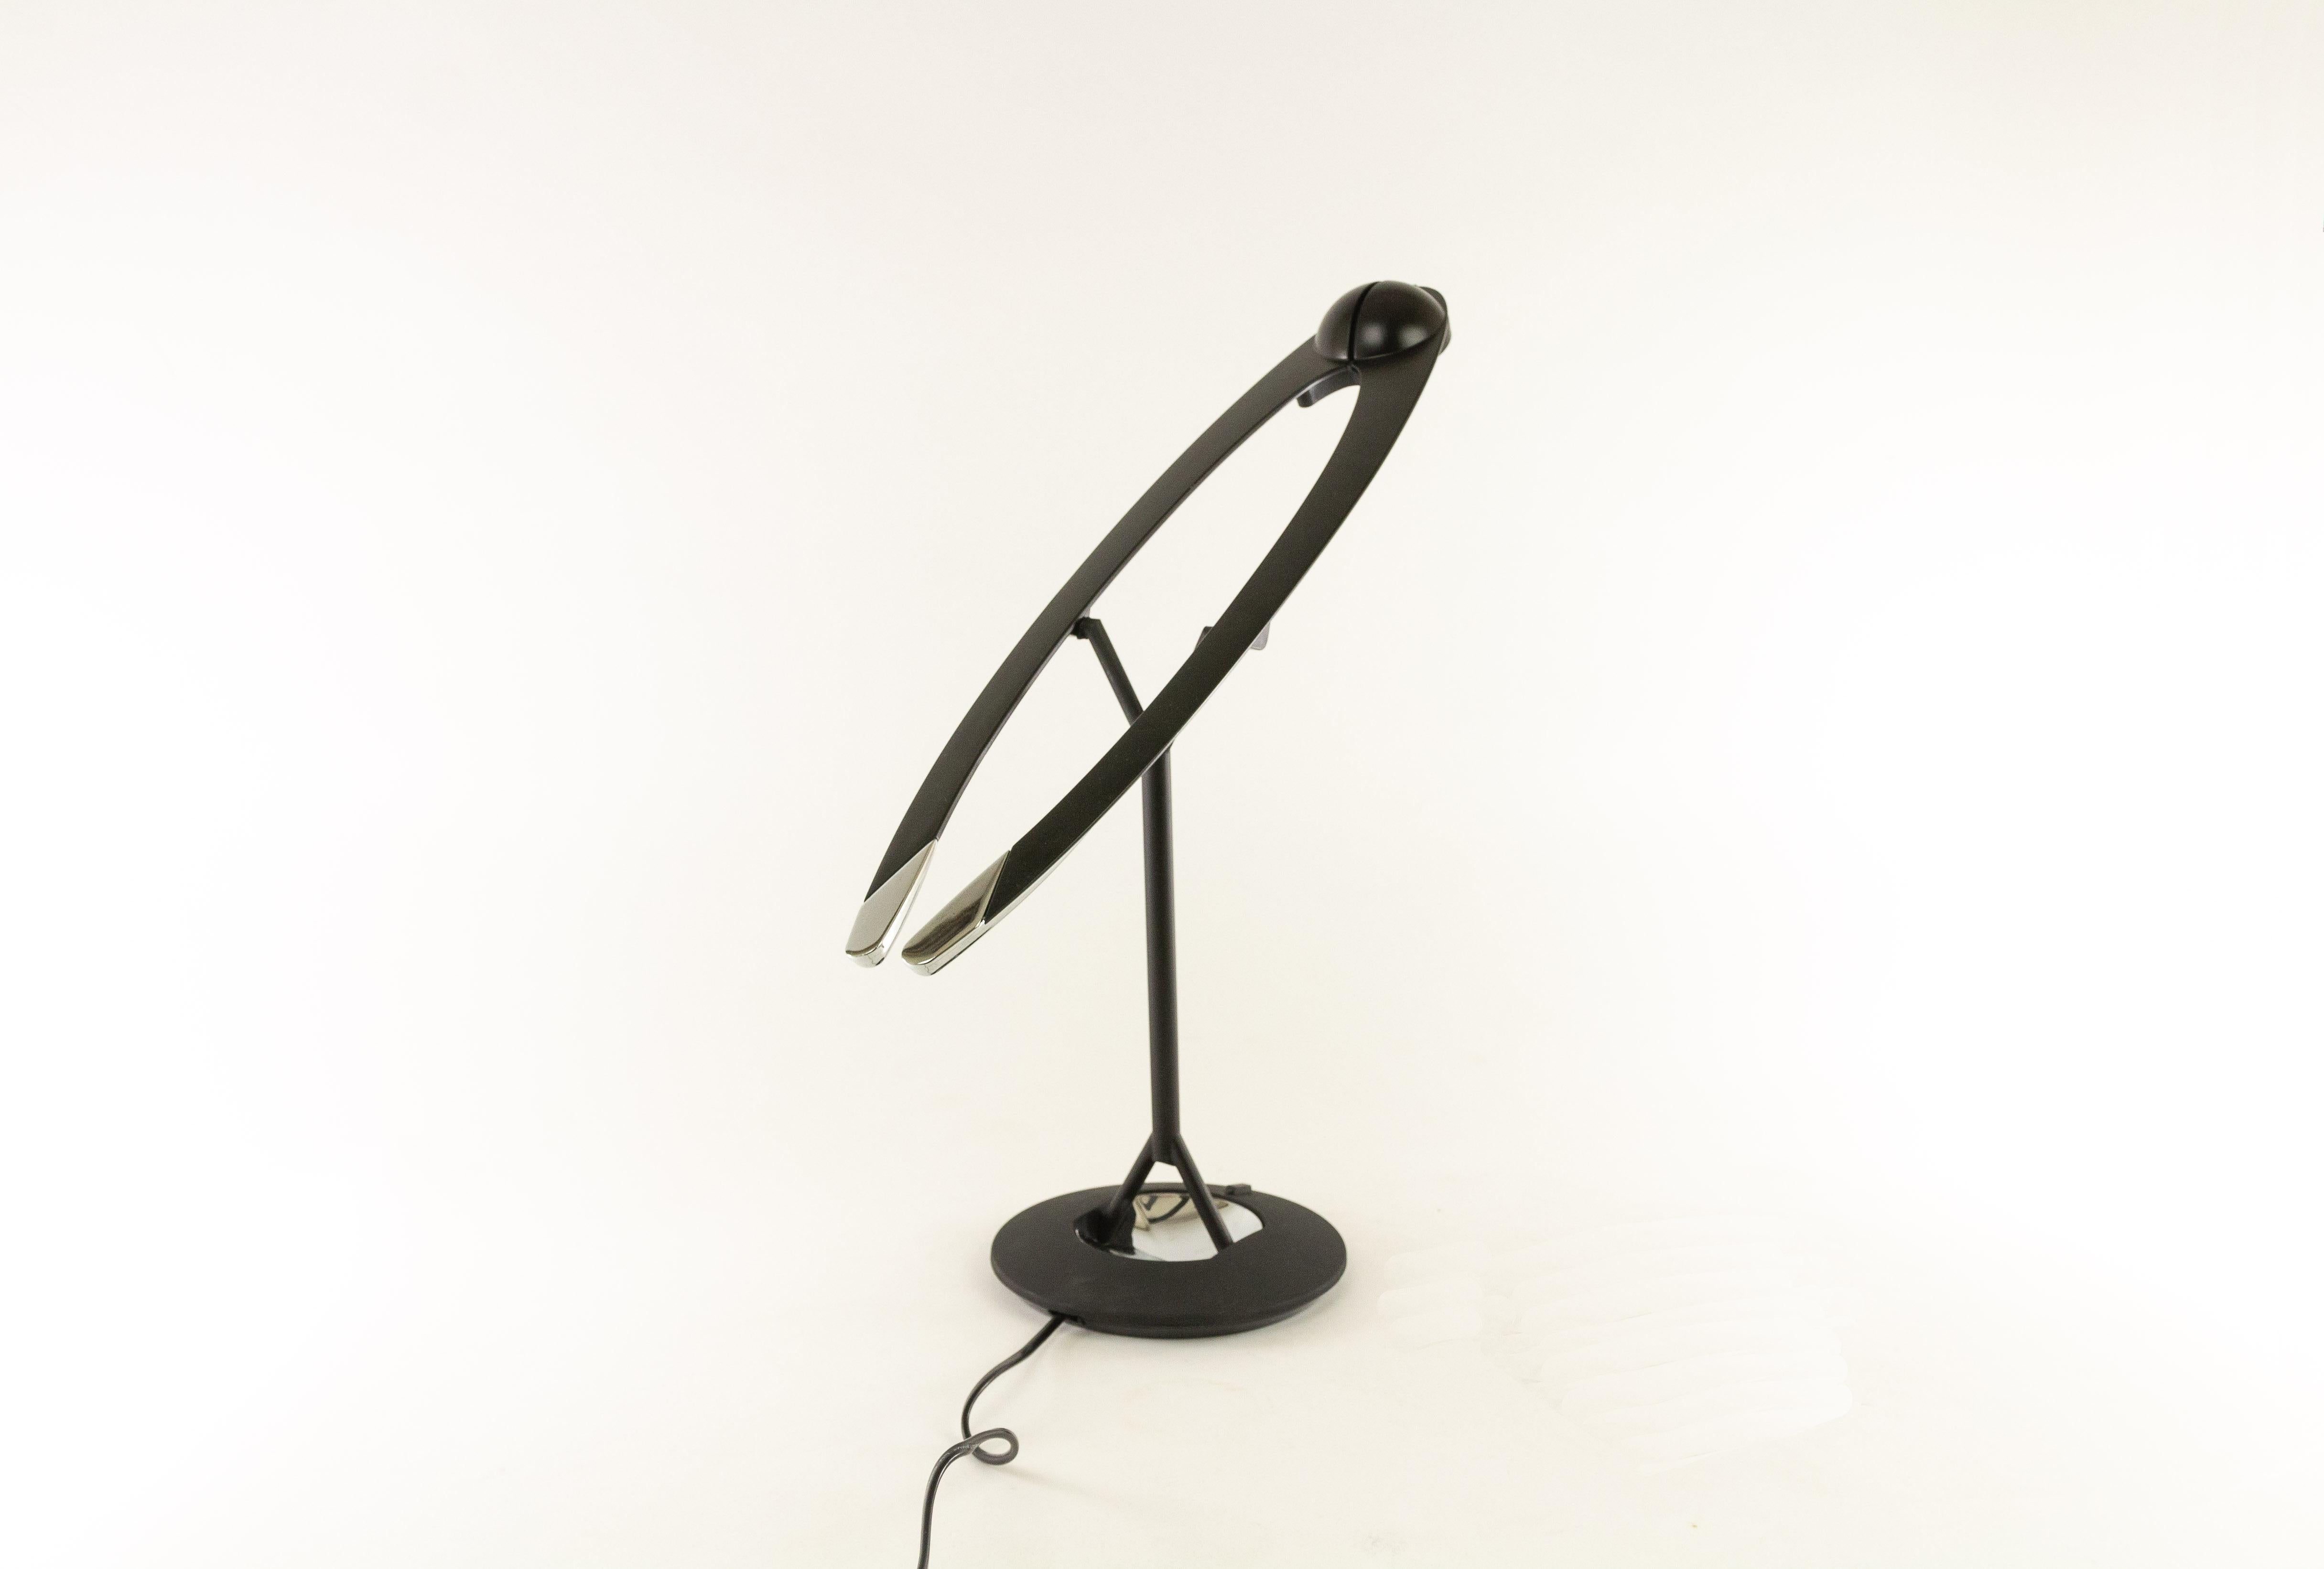 Halogen-Tischleuchte Malia, entworfen von Bruno Gecchelin und hergestellt von Tronconi. Das Design von Malia, das aus bestimmten Blickwinkeln ein wenig an einen Vogel oder ein Flugzeug erinnert, verleiht der Leuchte eine sehr dynamische Note.

Die